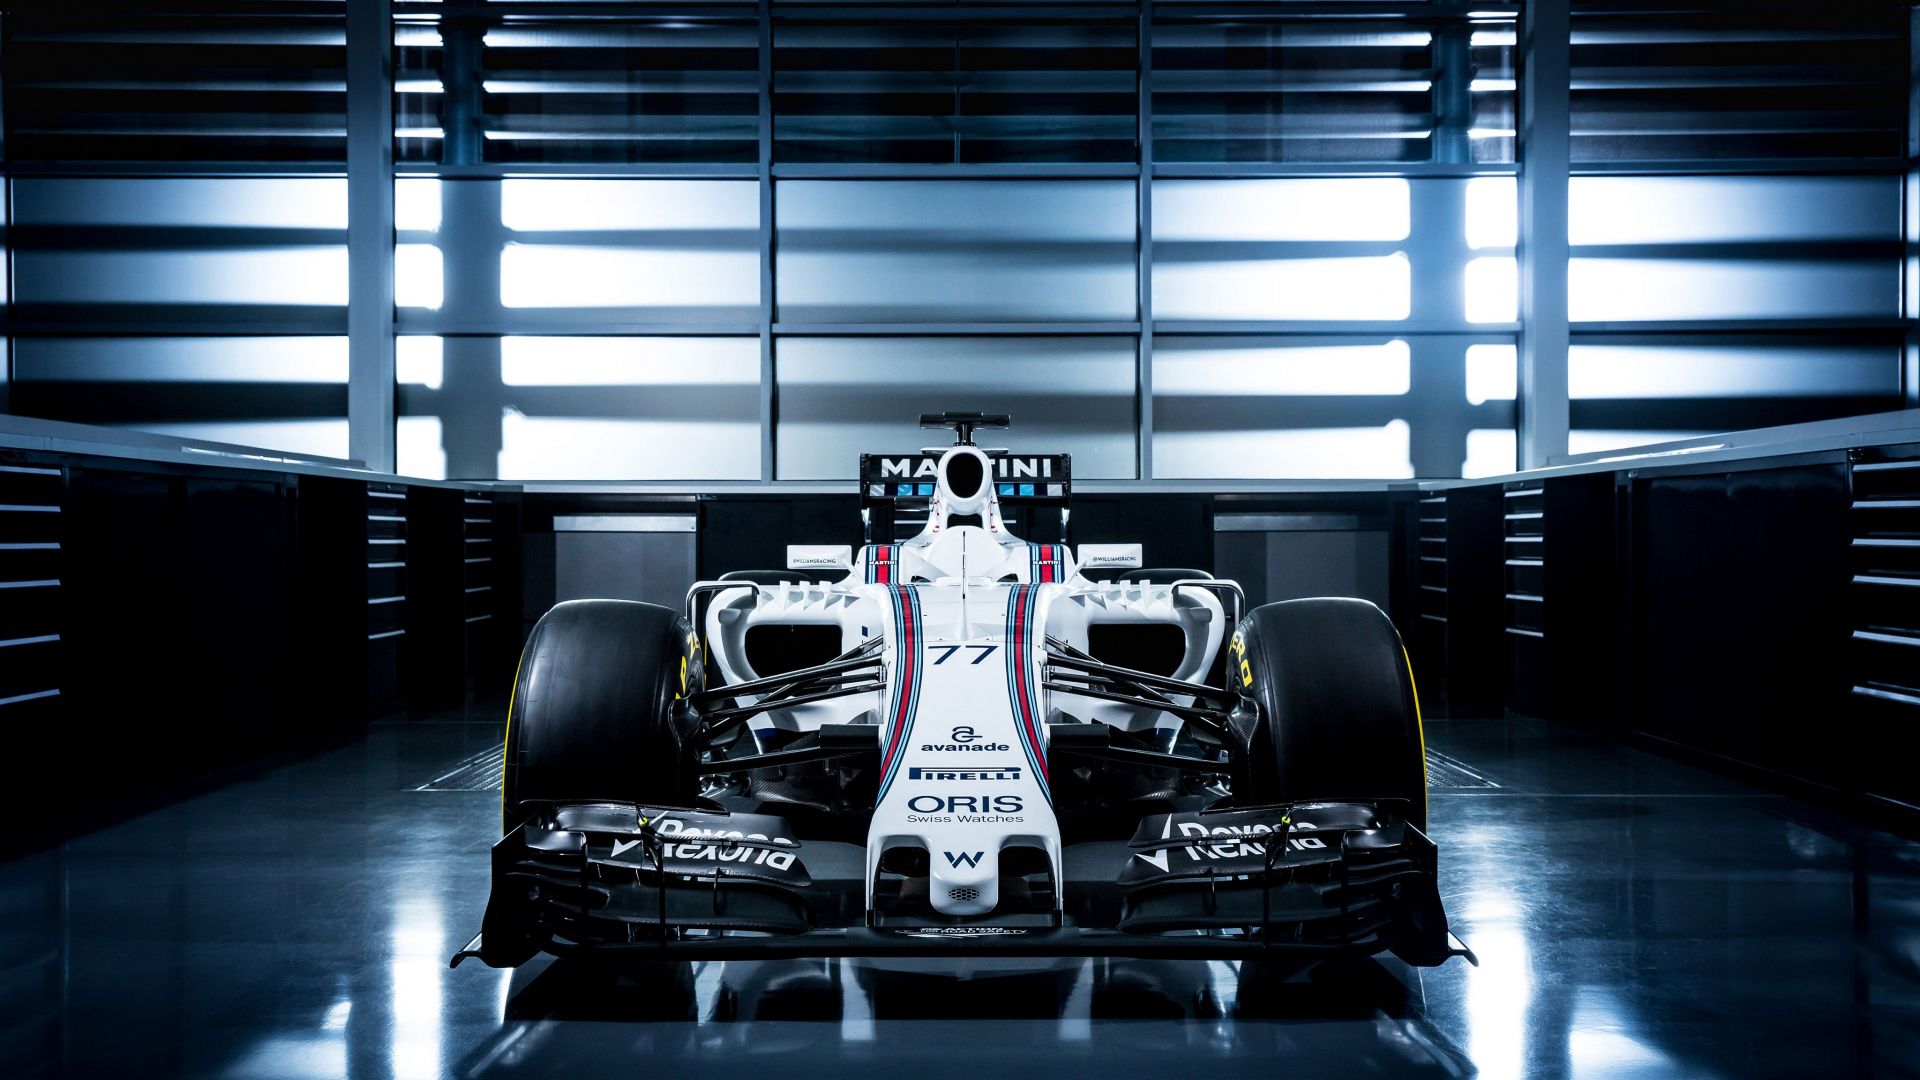 Уильямс ФВ28, гибрид, тест, Барселона, Формула 1, Ф1, Williams FW38, Formula 1, testing, LIVE from Barcelona, F1 (horizontal)